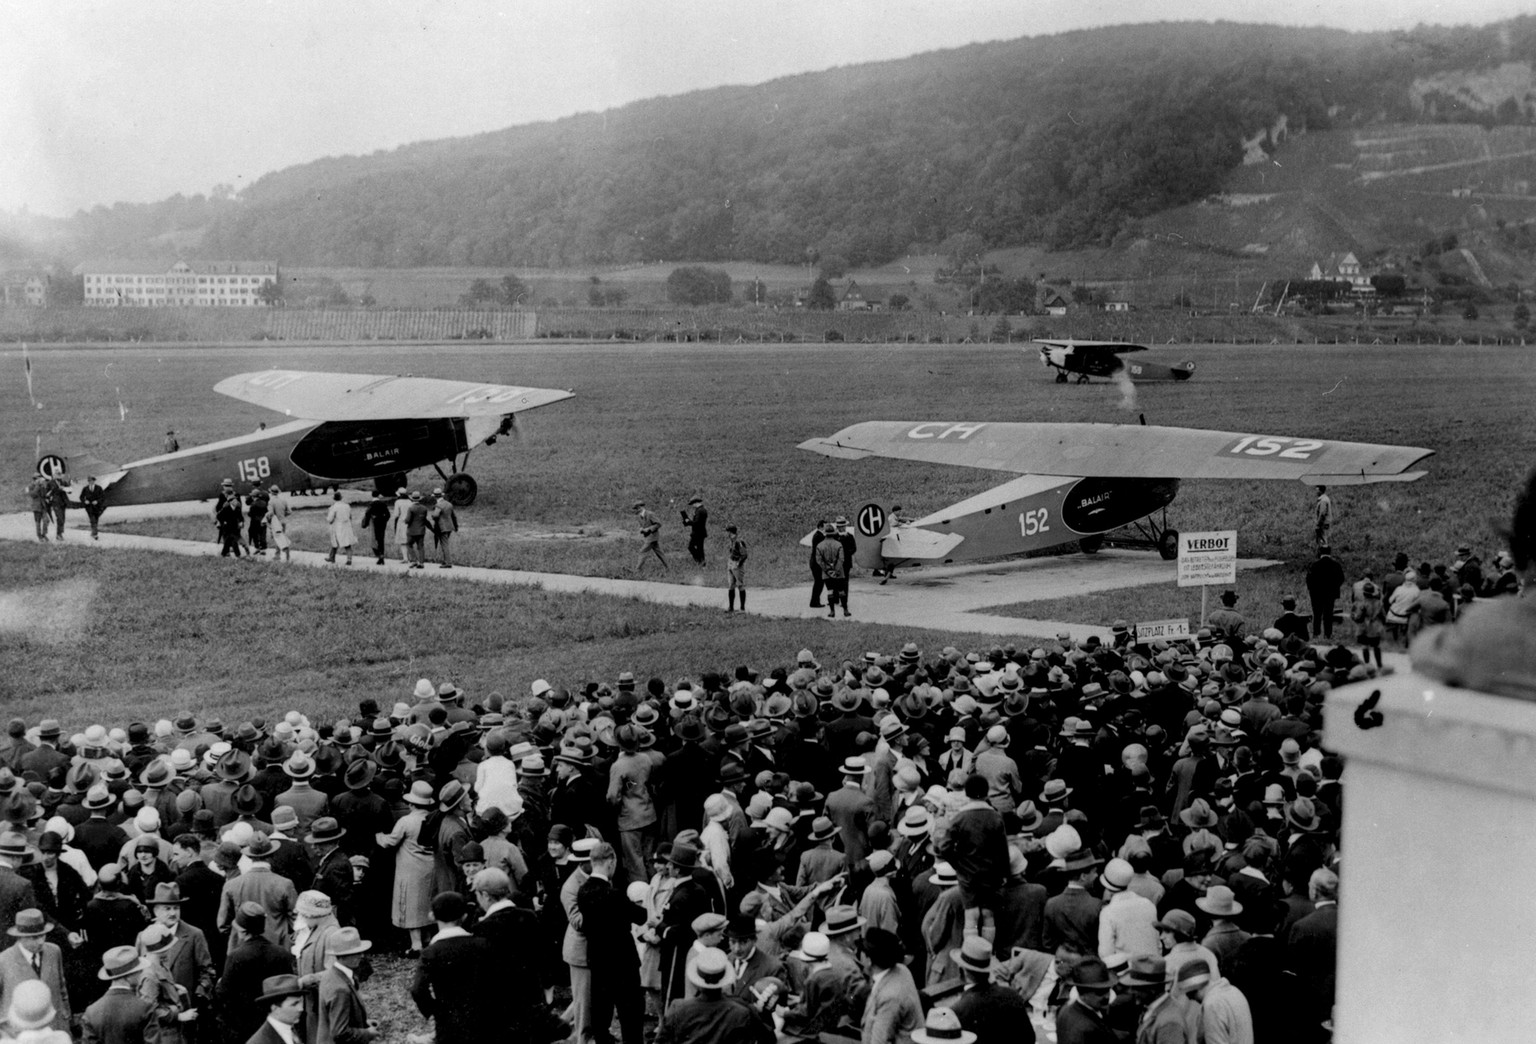 Faszination Fliegen ca. 1928: Eine&nbsp;CH-152 Fokker F-III, eine CH-158 Fokker F-VIIa und eine CH-159 Fokker F-VIIa auf dem Flugplatz&nbsp;Basel-Birsfelden.